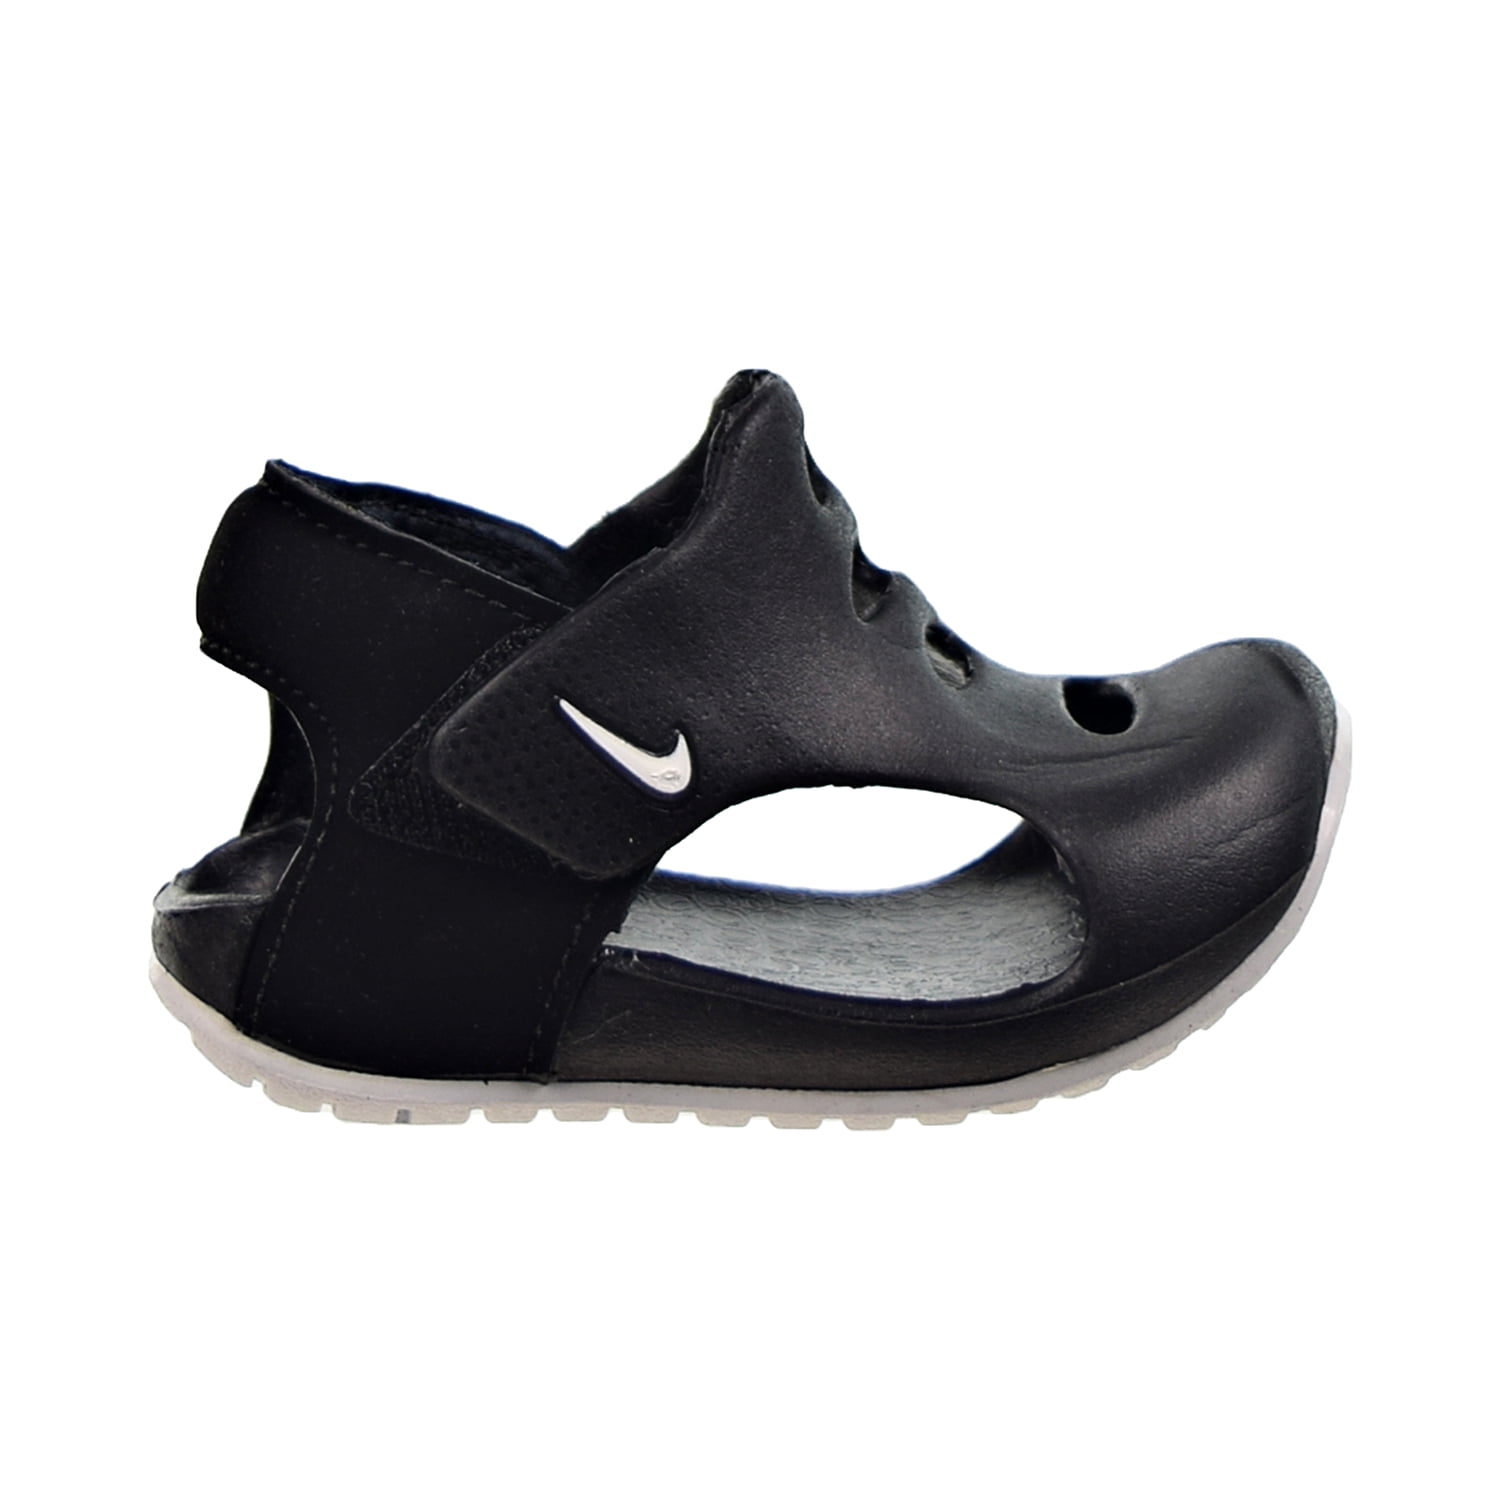 Makkelijker maken redactioneel Vergelding Nike Sunray Protect 3 (TD) Toddler's Sandals Black-White dh9465-001 -  Walmart.com